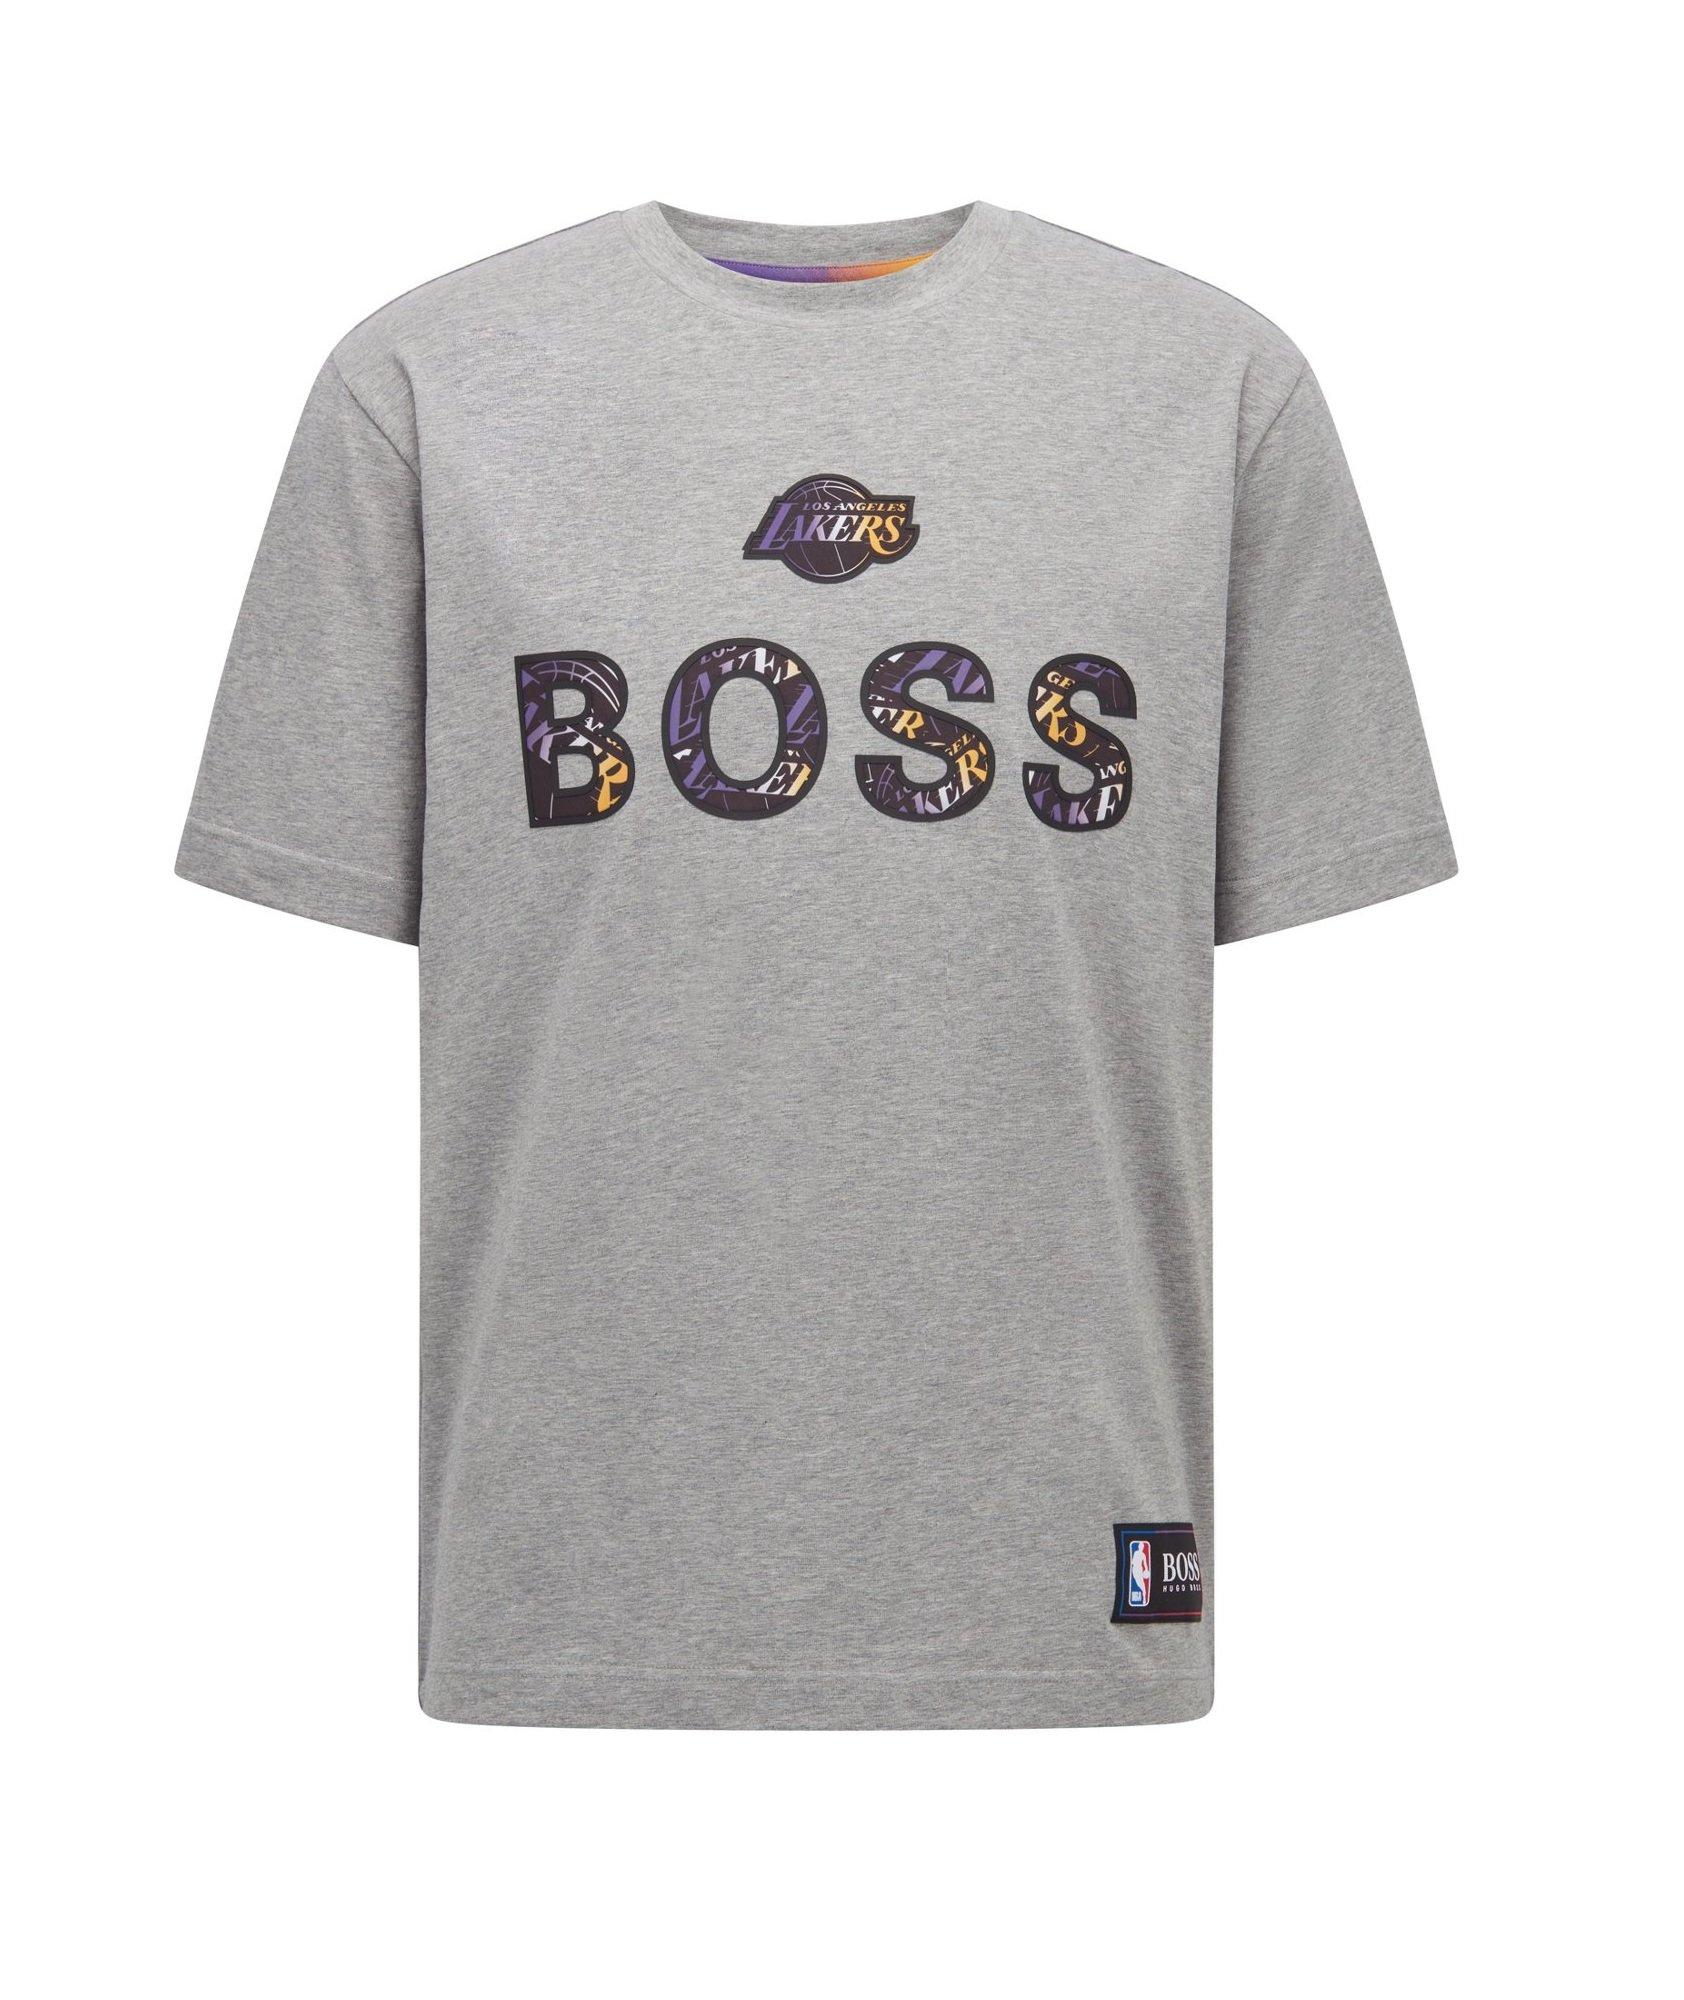 T-shirt en coton extensible, collection NBA image 0